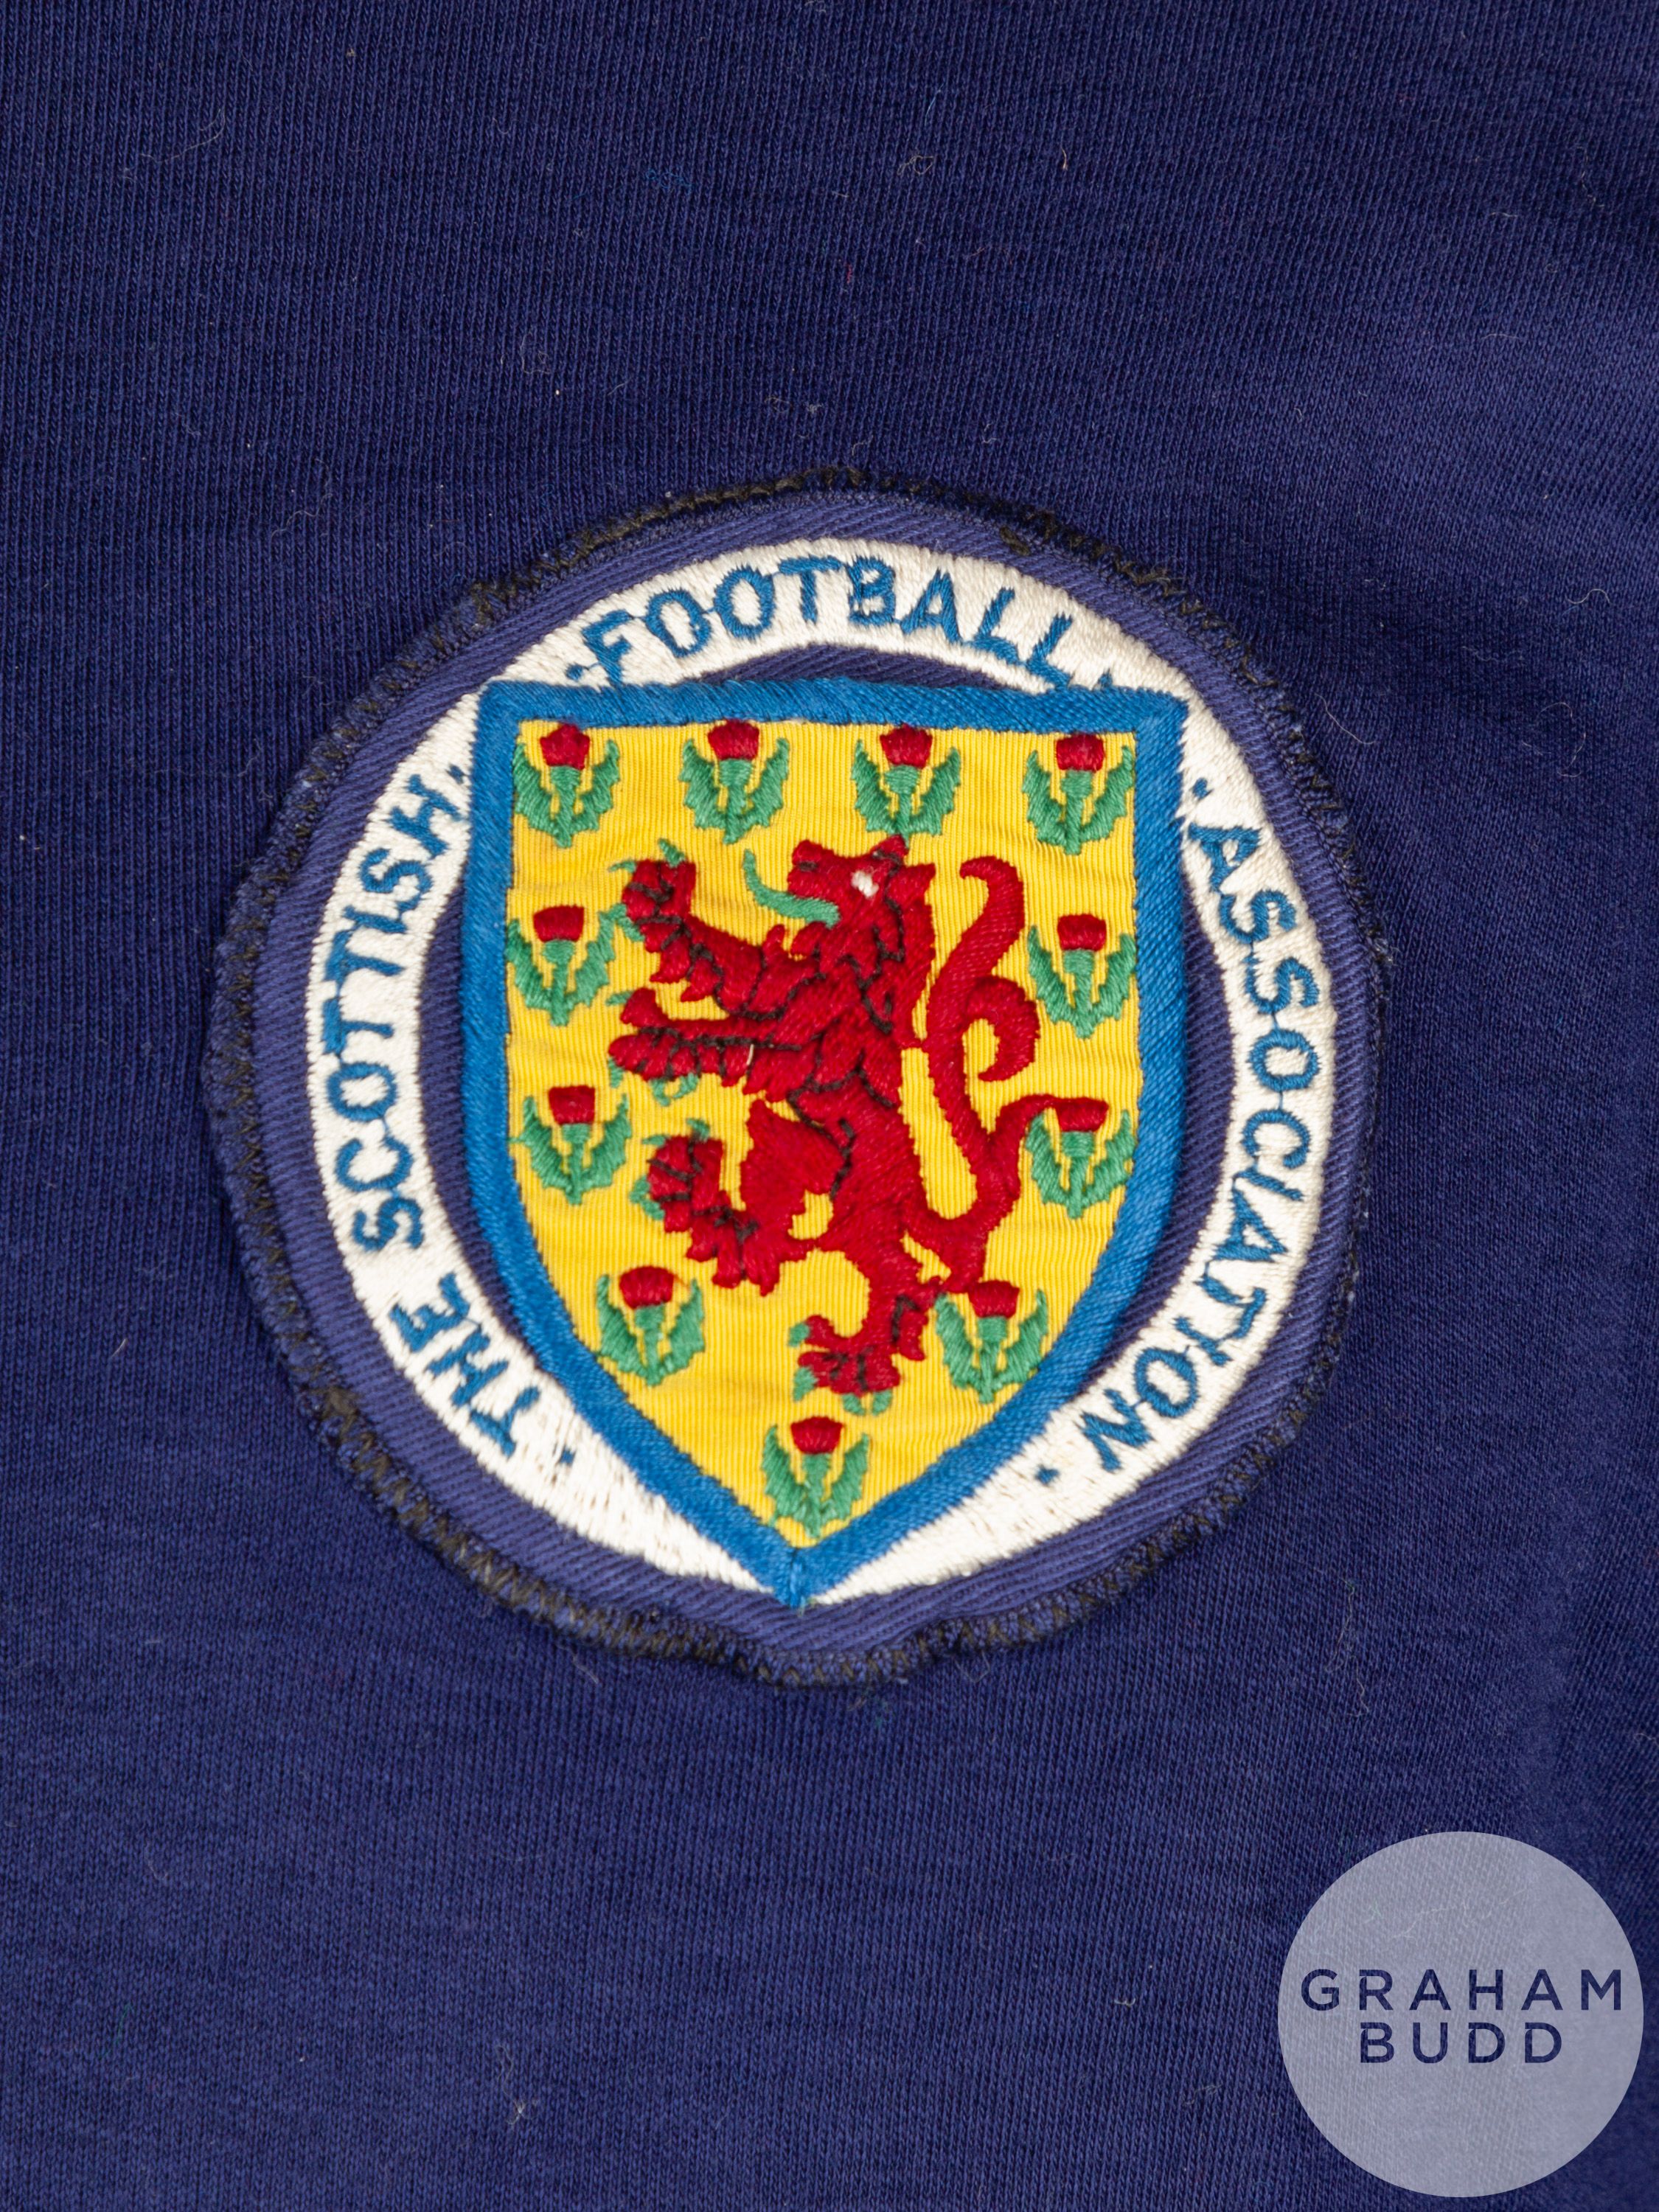 John Greig blue Scotland No.6 Scotland v. England match worn long-sleeved shirt - Image 3 of 4